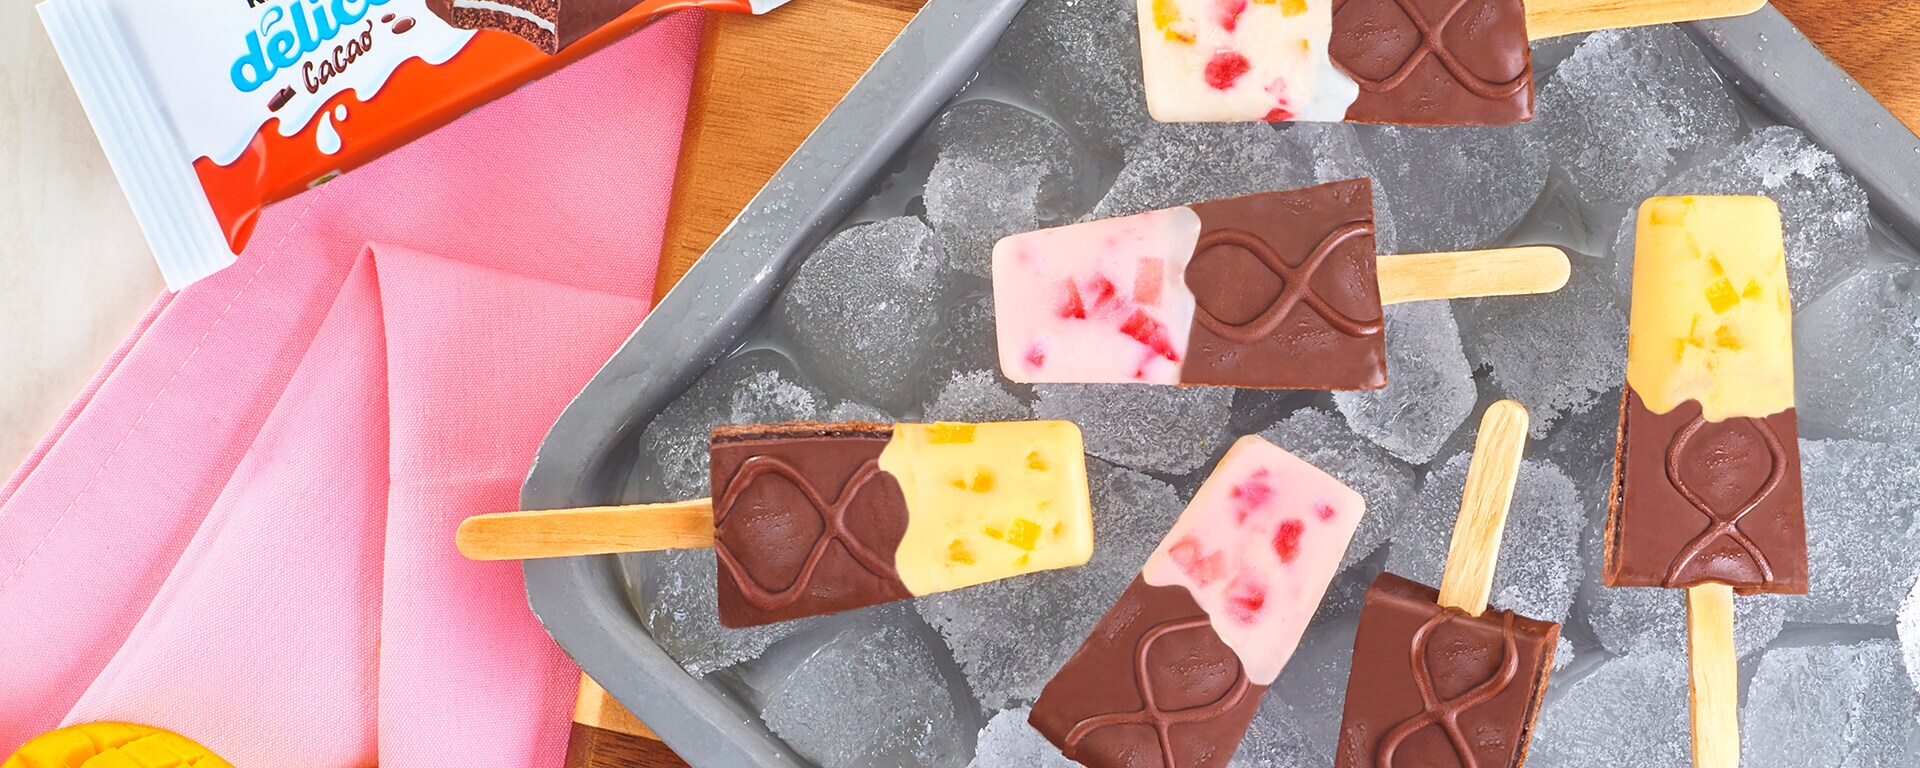 Paletas heladas cubiertas de chocolate Kinder Delice